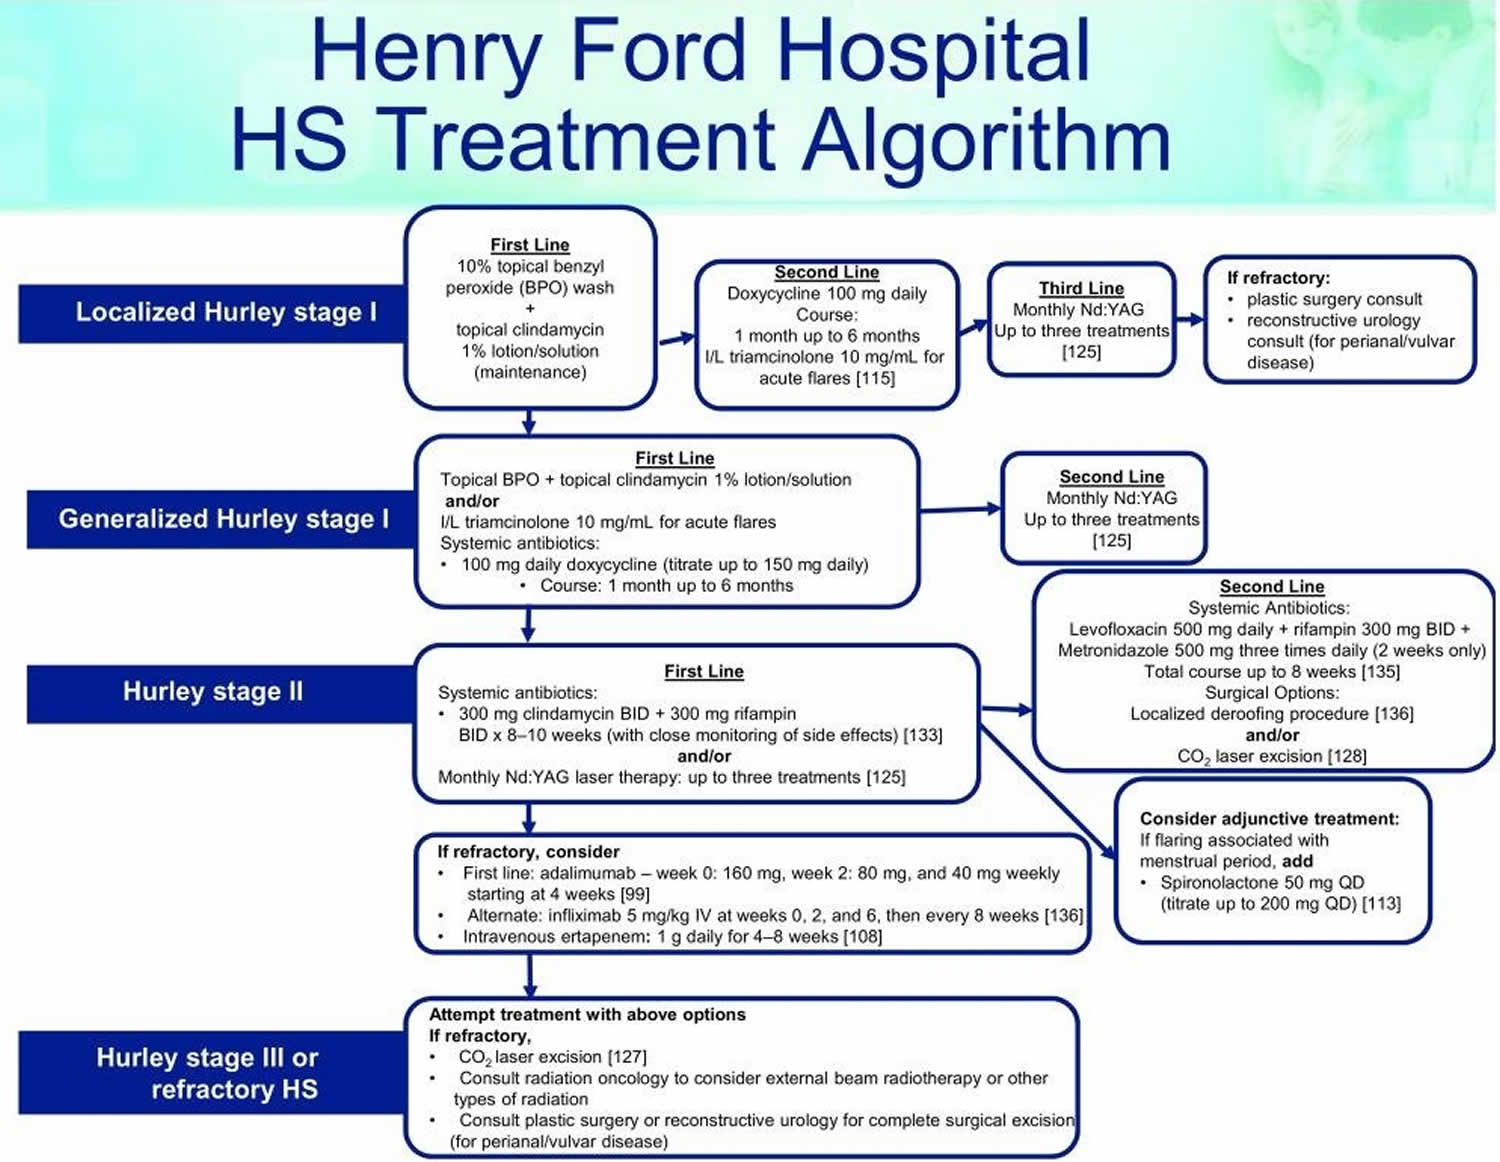 hidradenitis suppurativa treatment algorithm